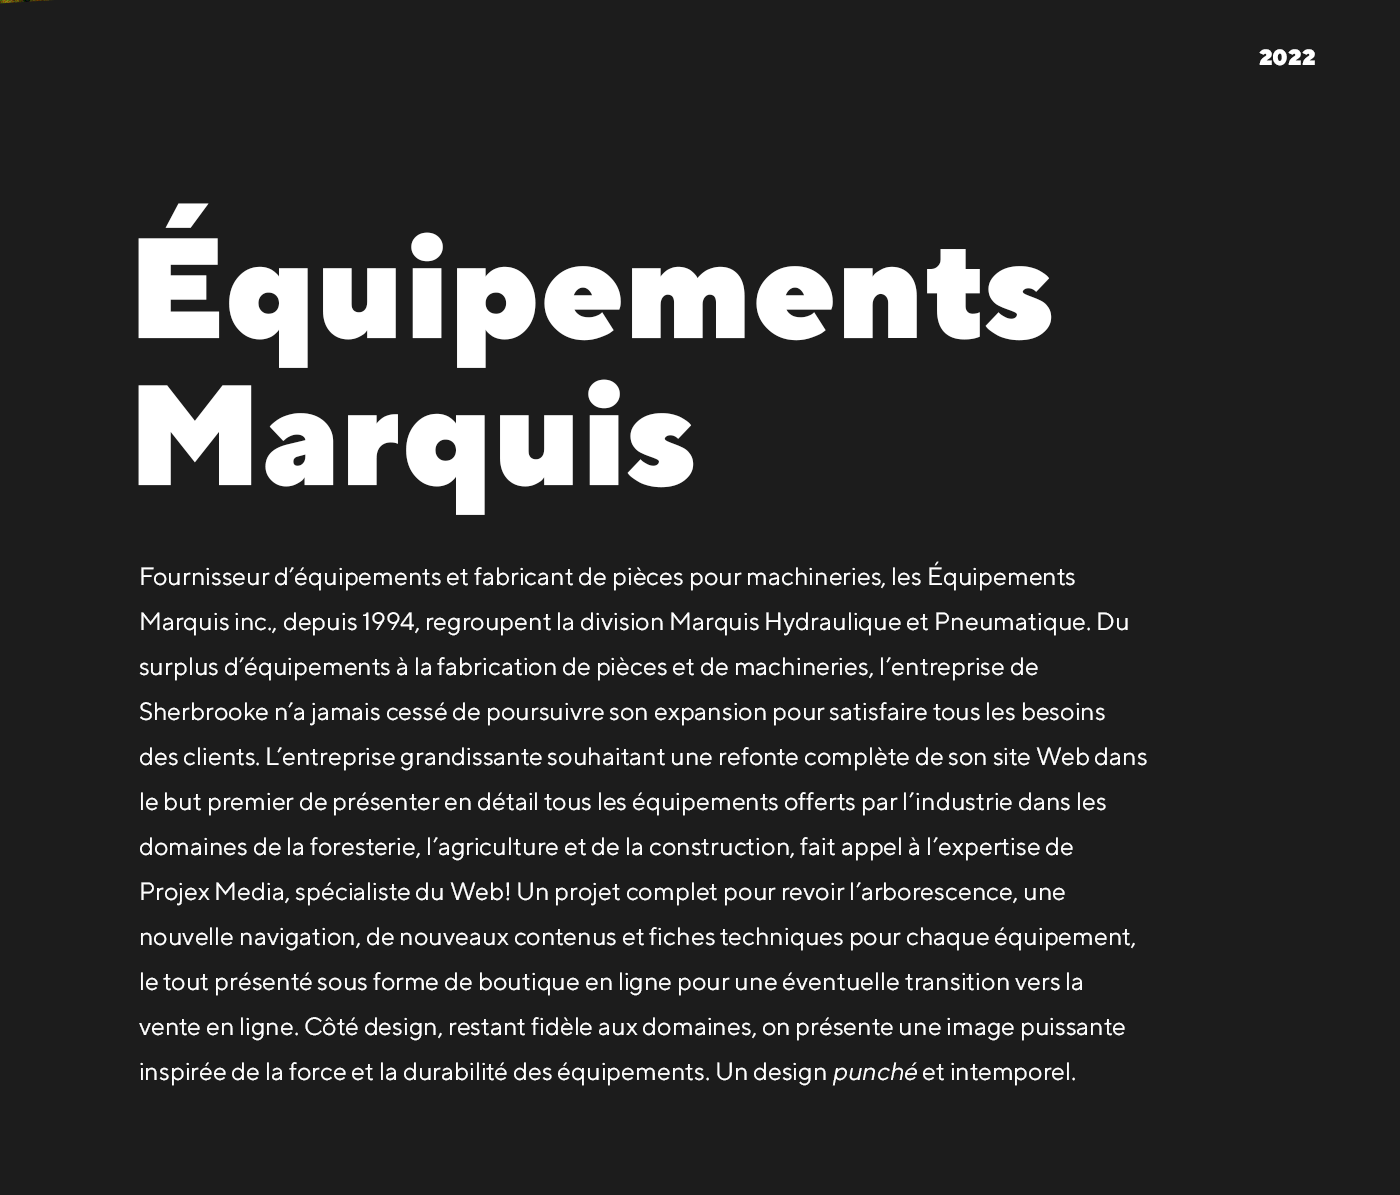 Équipements Marquis / 2022 - Réalisation signée Projex Media